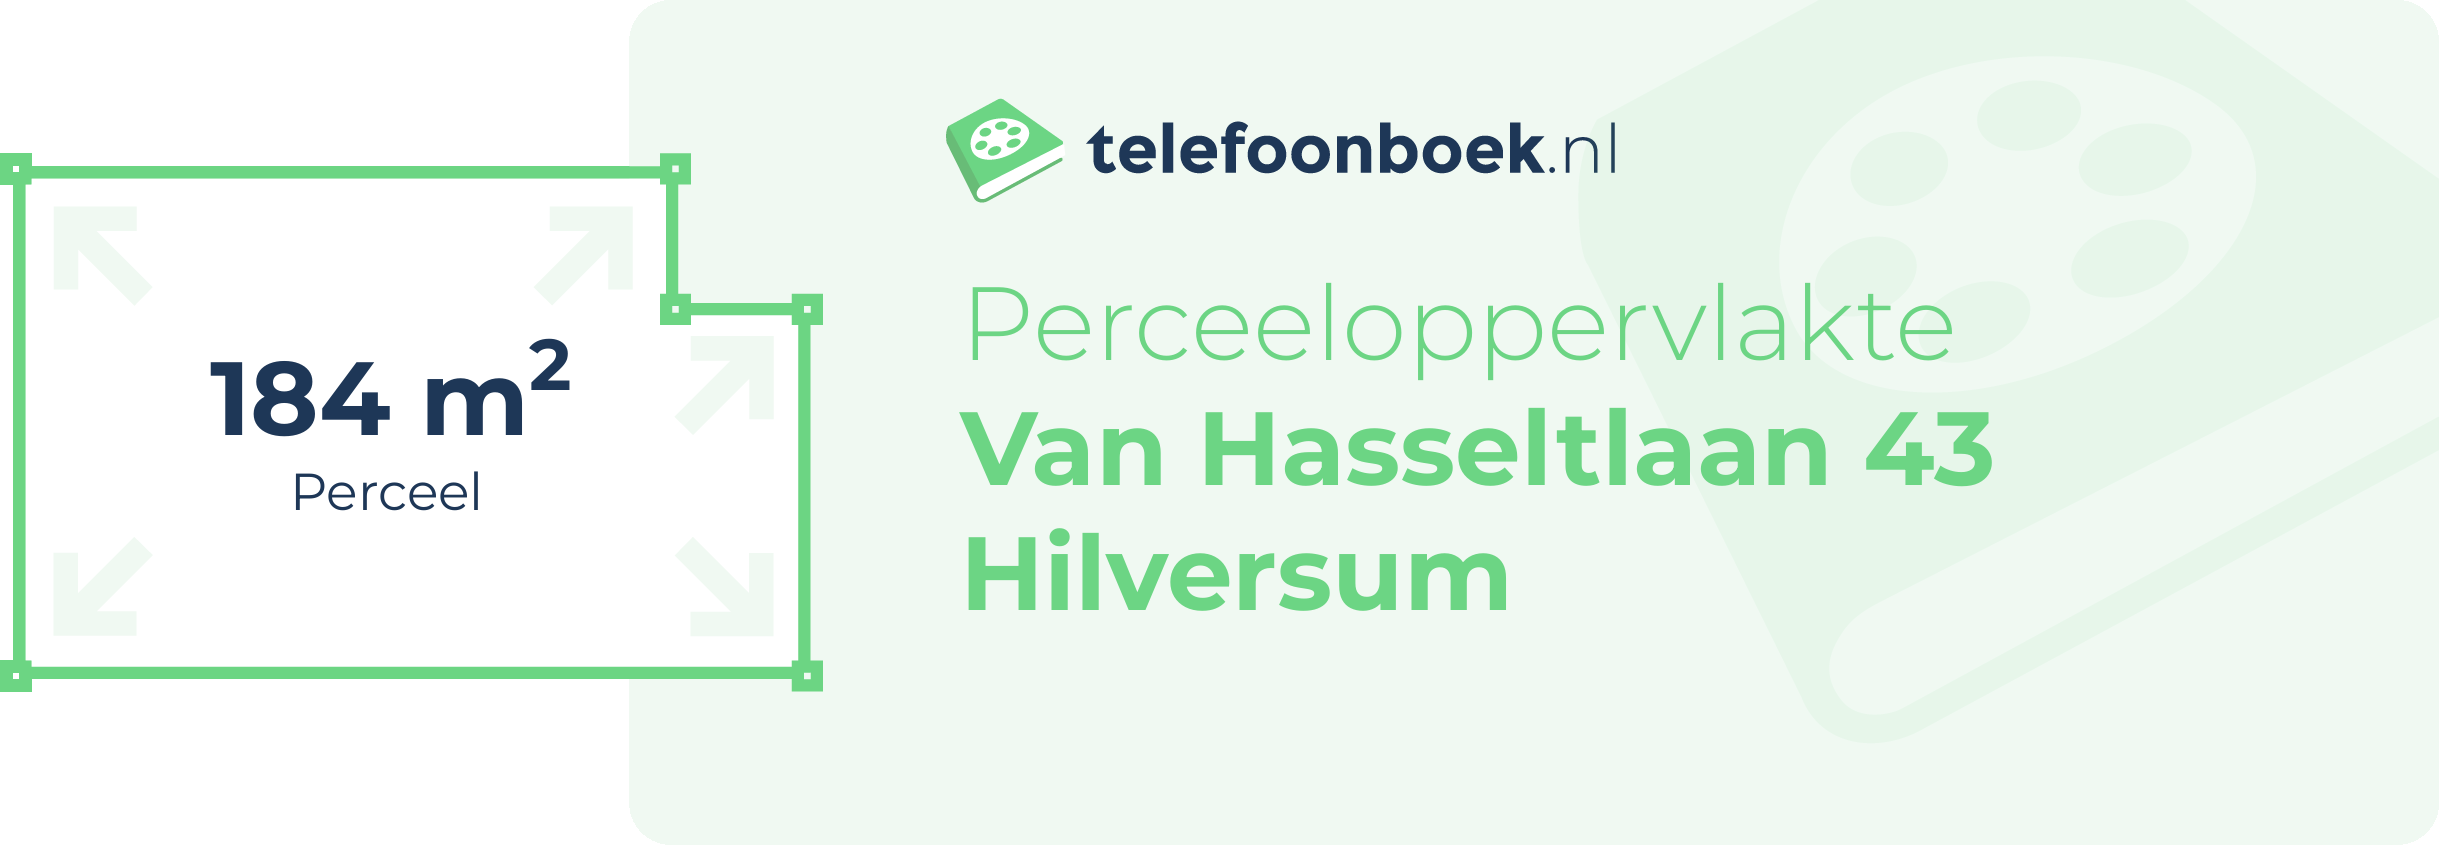 Perceeloppervlakte Van Hasseltlaan 43 Hilversum